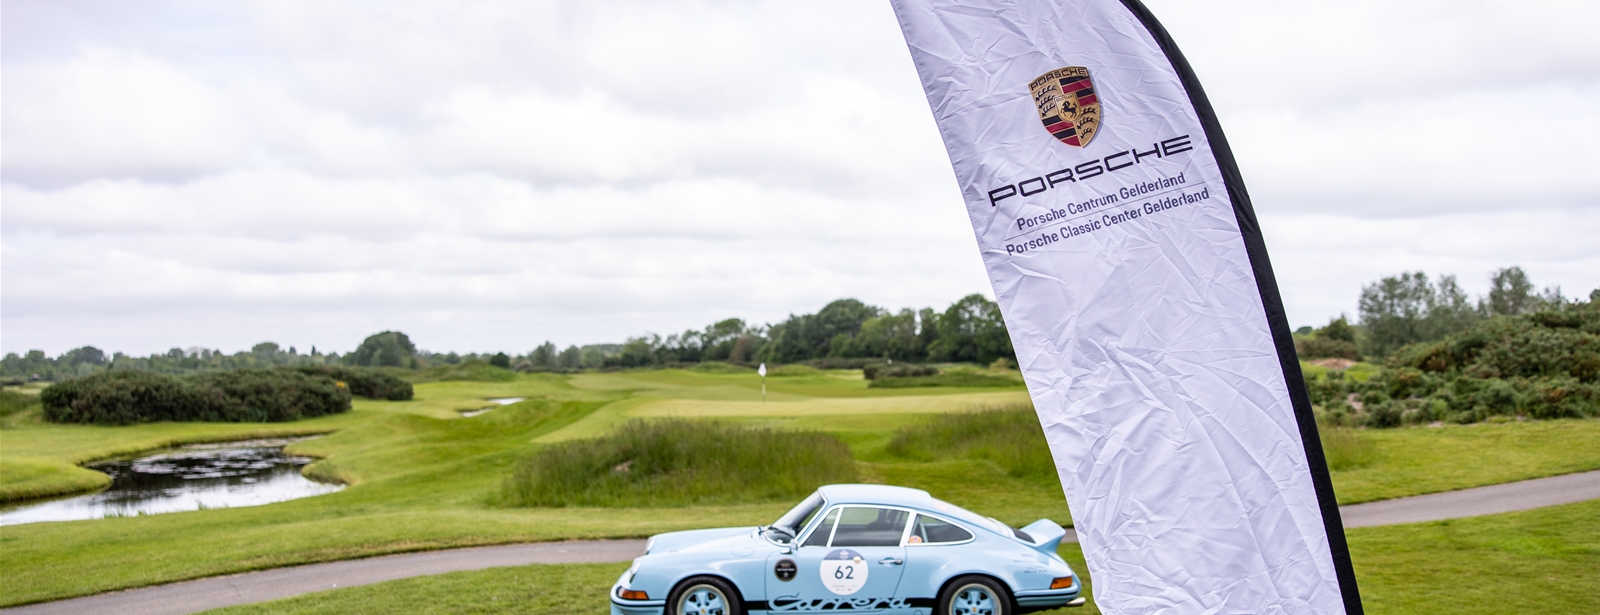 Porsche Centrum Gelderland Golf Cup 